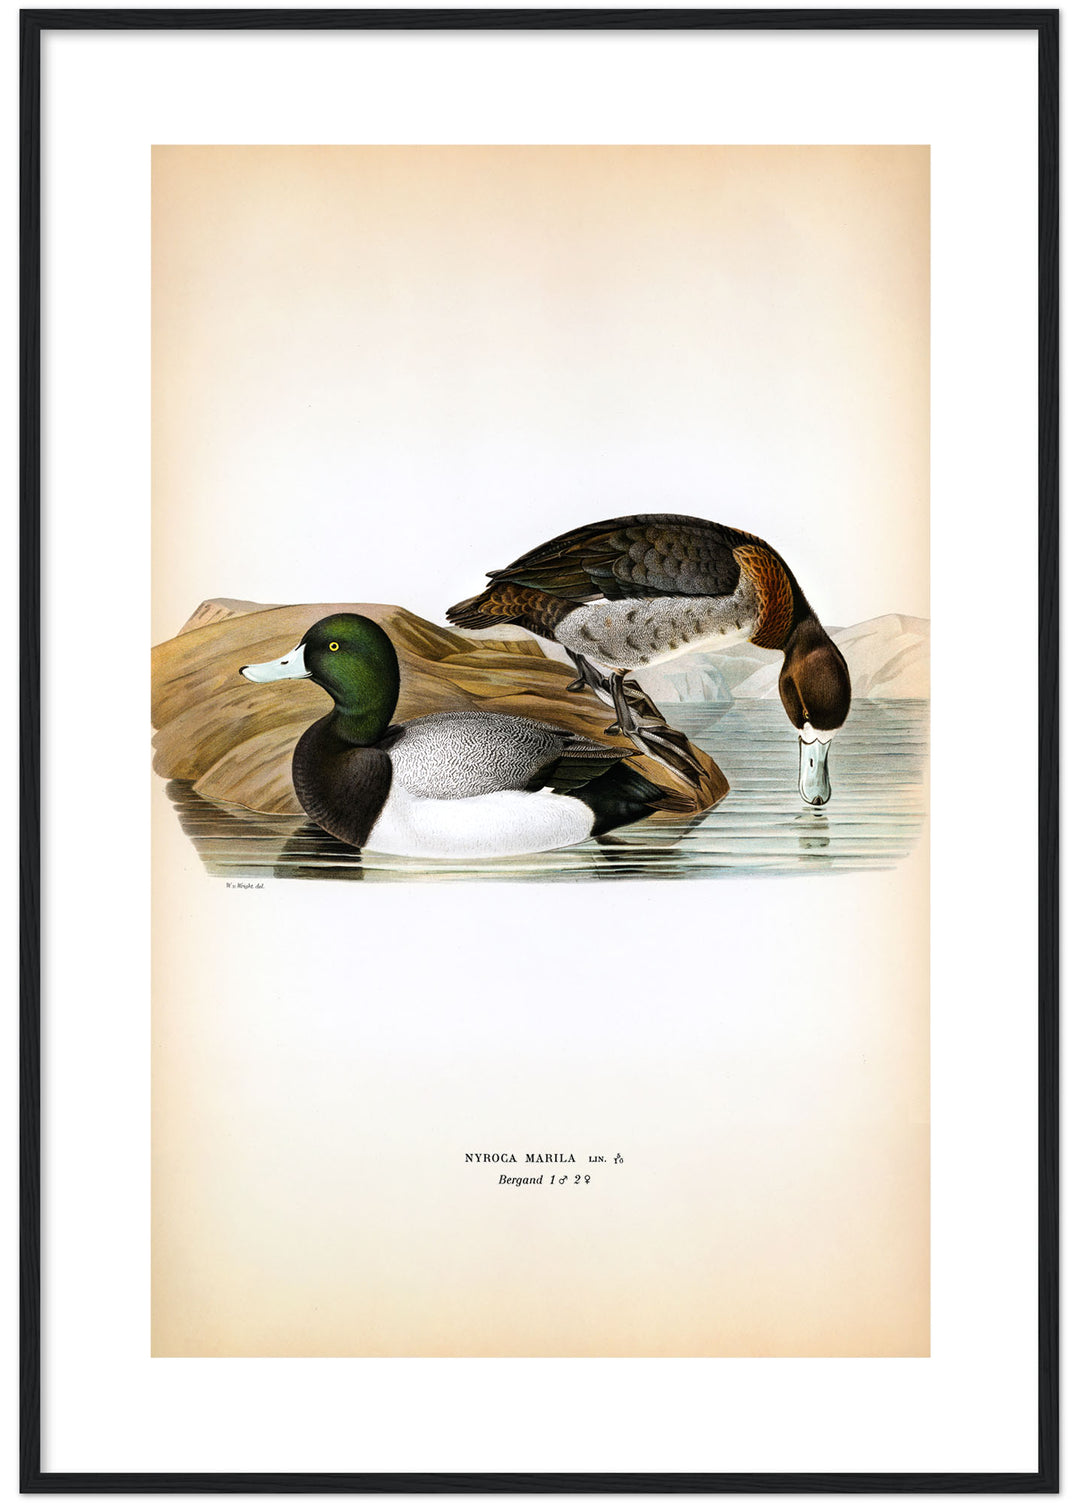 Fågeln Bergand på klassisk vintage poster/affisch